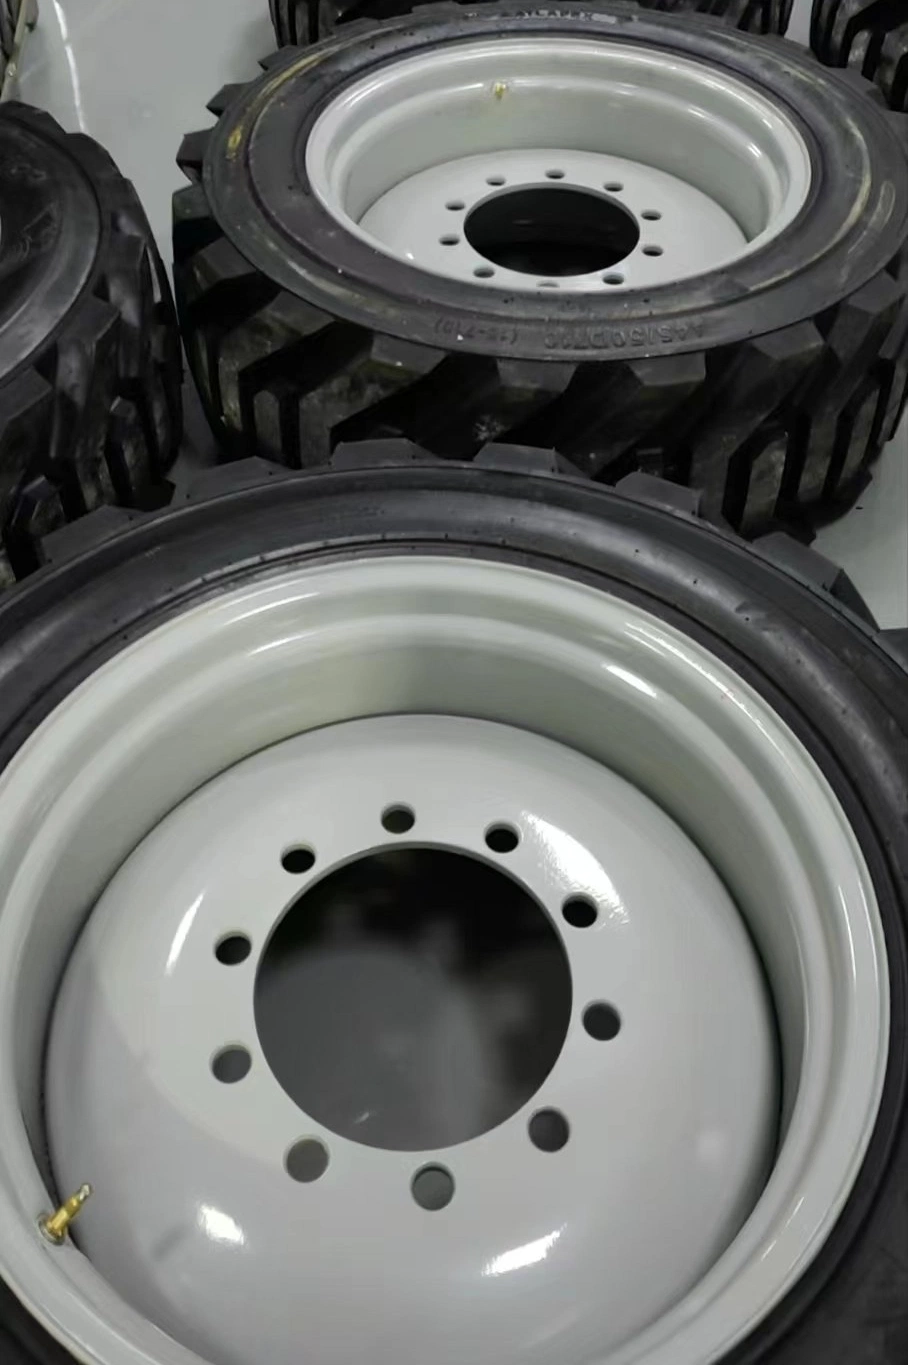 Les pneus industriels OTR un pneu diagonal Sks 10-16,5 12-16,5 14-17,5 chargeur Skid Steer pneu pour la rétropelle